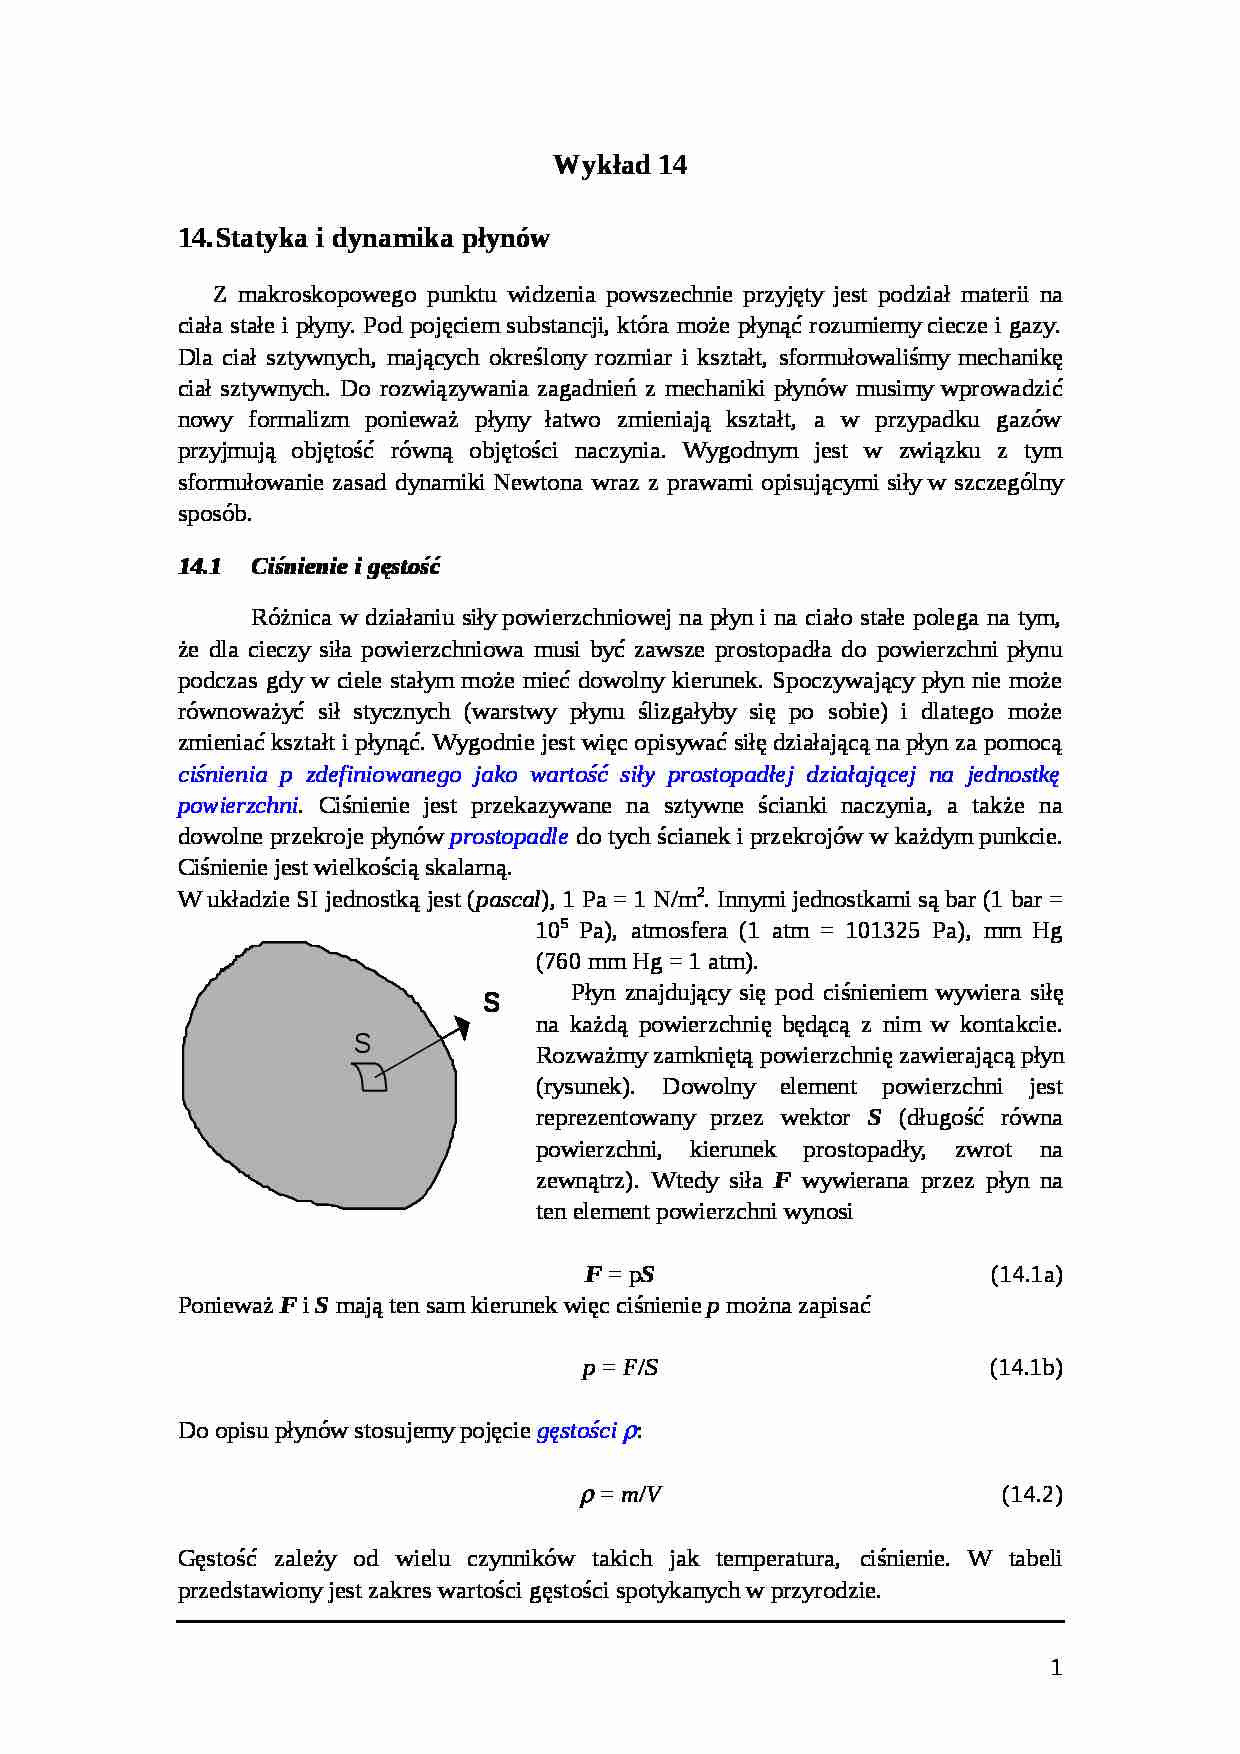 Statyka i dynamika płynów - strona 1